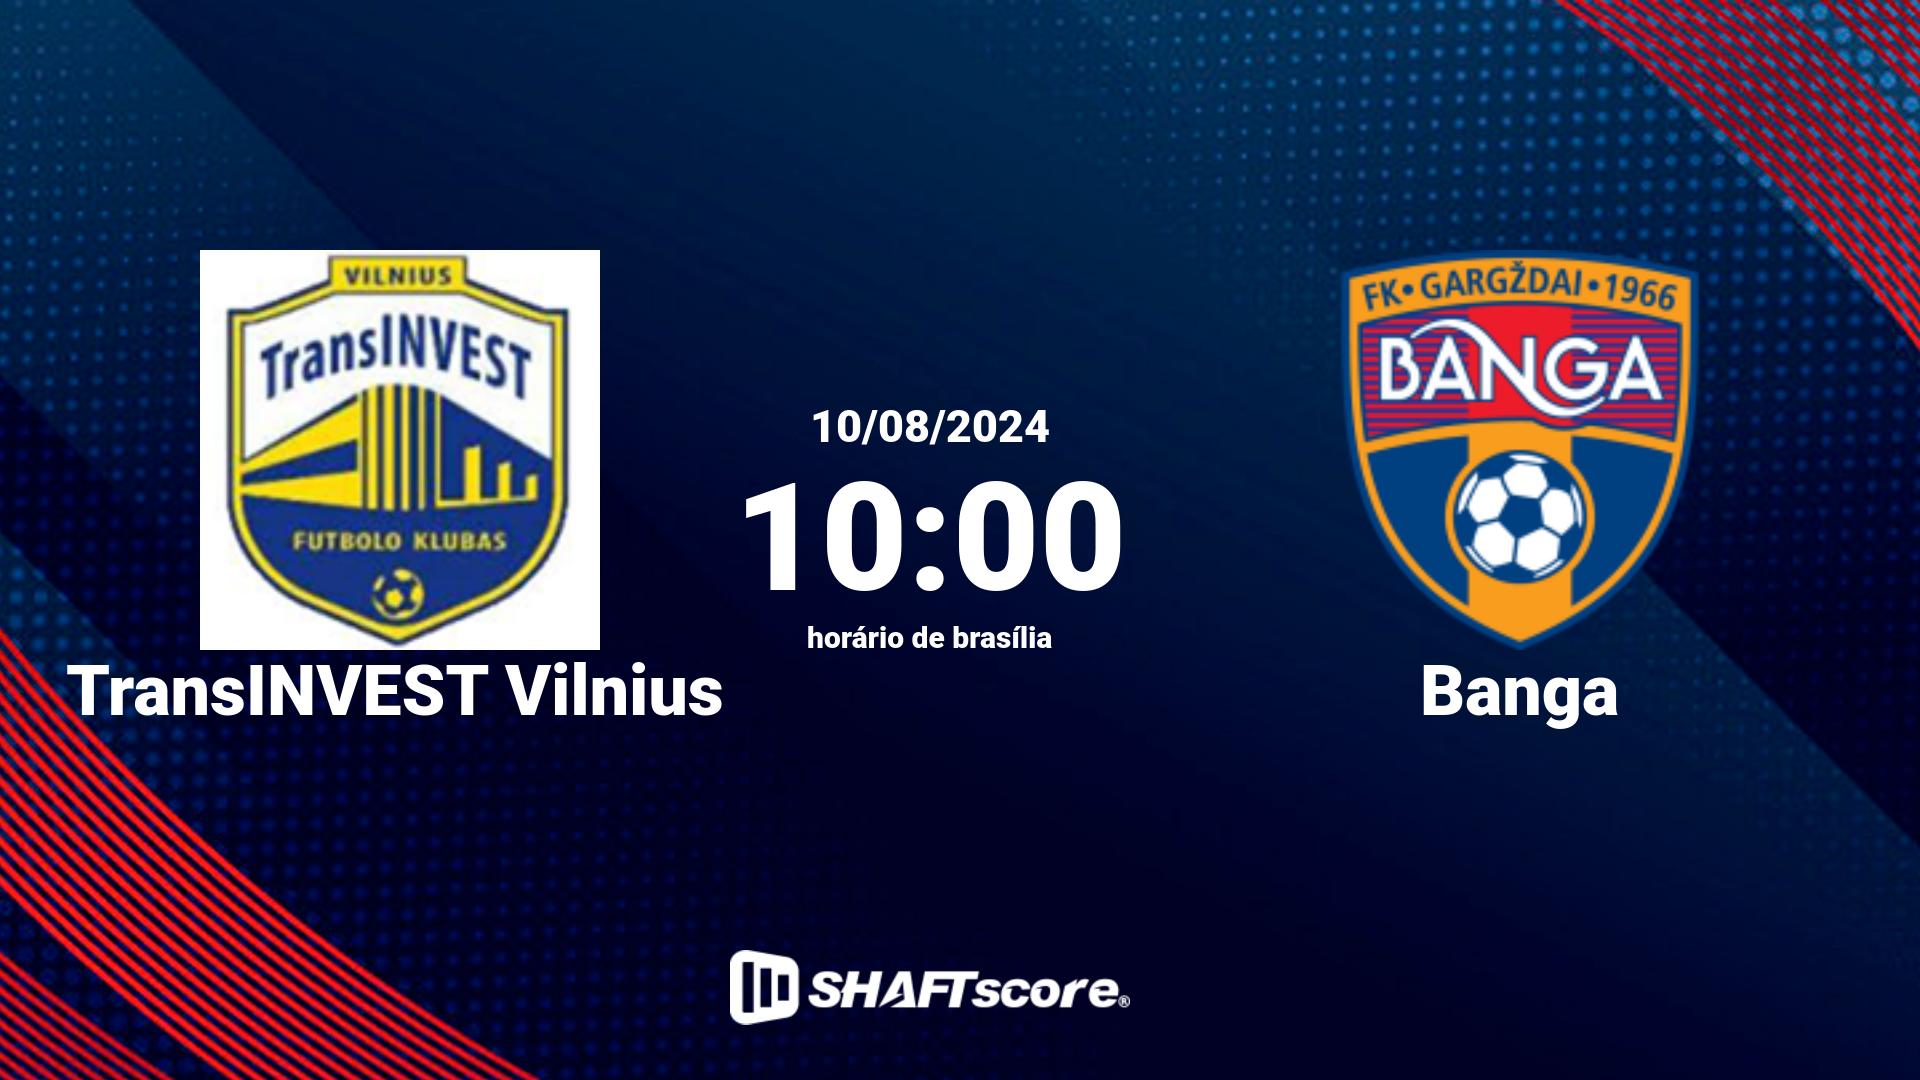 Estatísticas do jogo TransINVEST Vilnius vs Banga 10.08 10:00